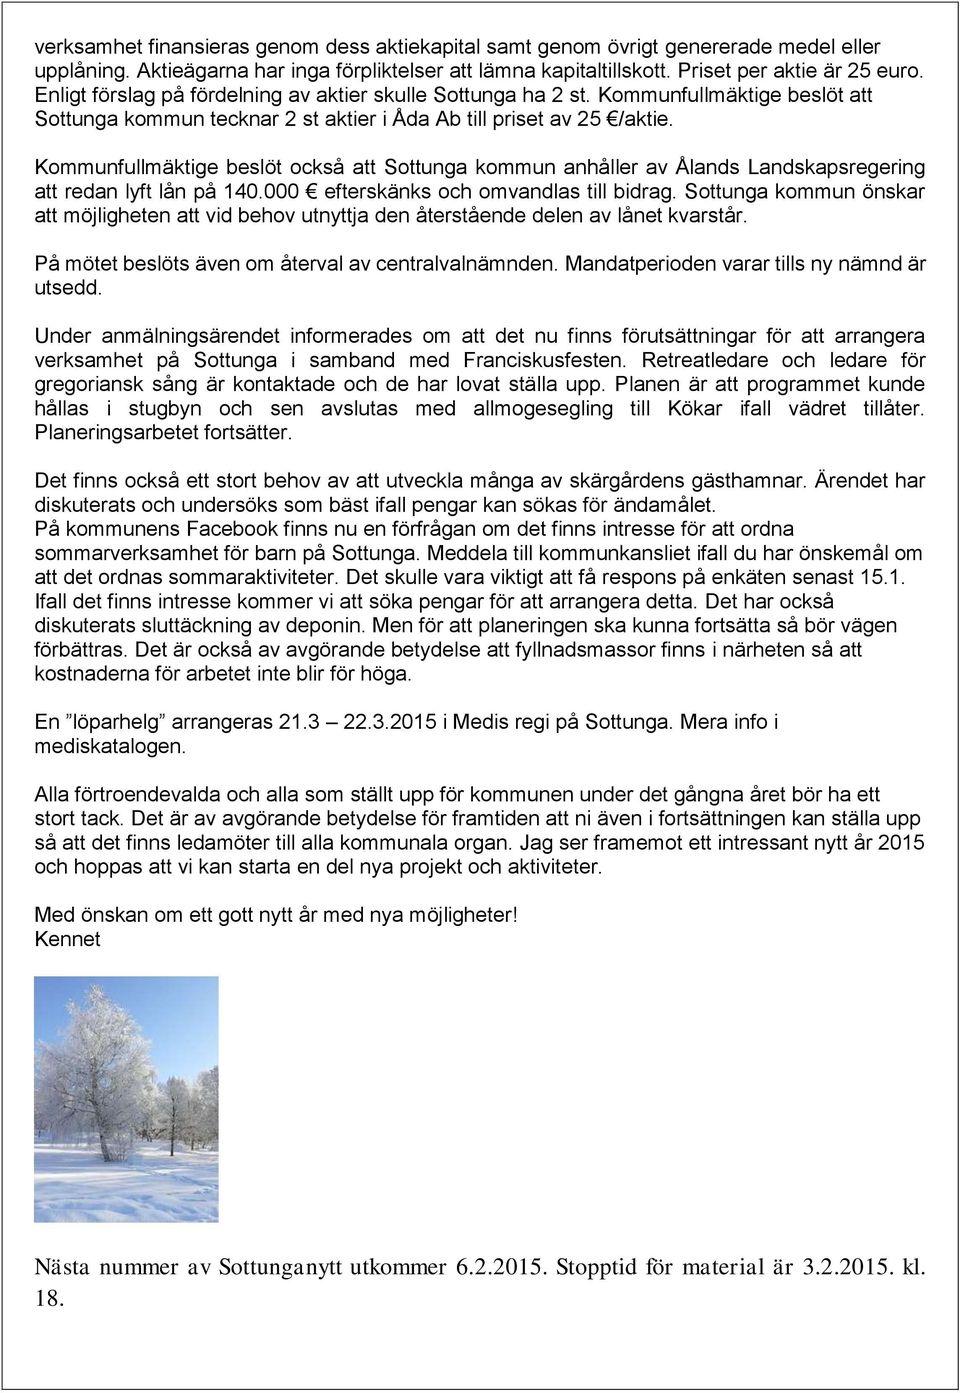 Kommunfullmäktige beslöt också att Sottunga kommun anhåller av Ålands Landskapsregering att redan lyft lån på 140.000 efterskänks och omvandlas till bidrag.